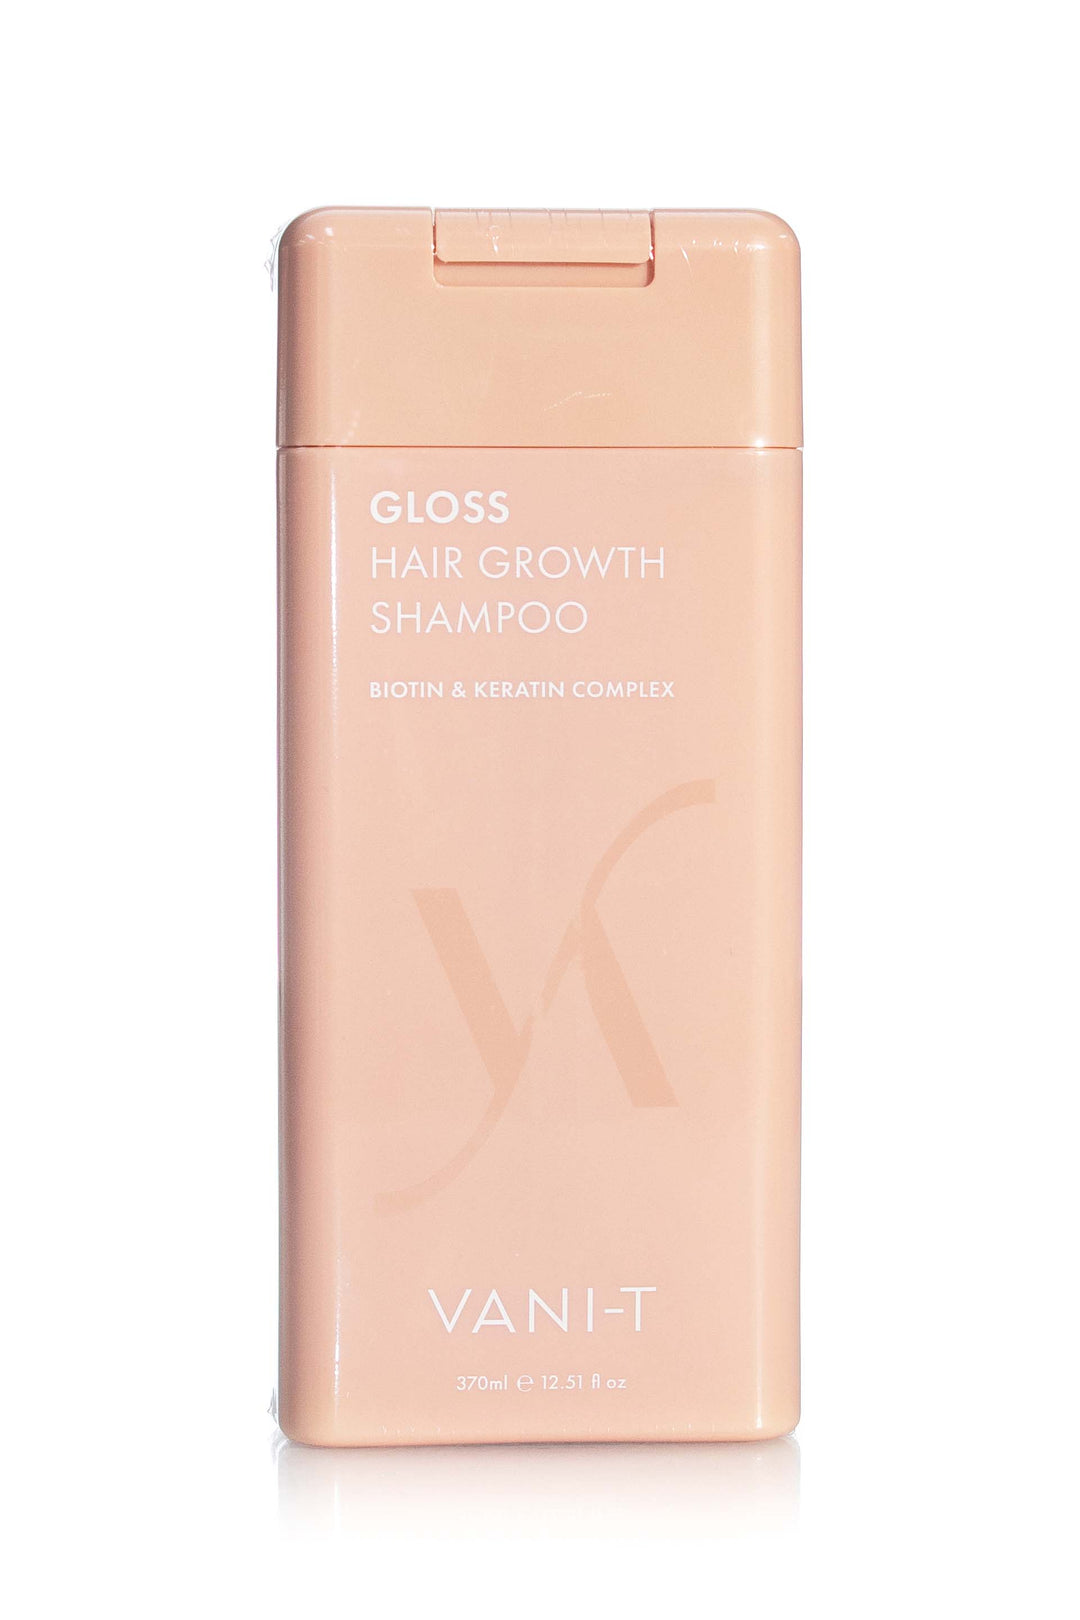 VANI-T GLOSS HAIR GROWTH SHAMPOO 370ML